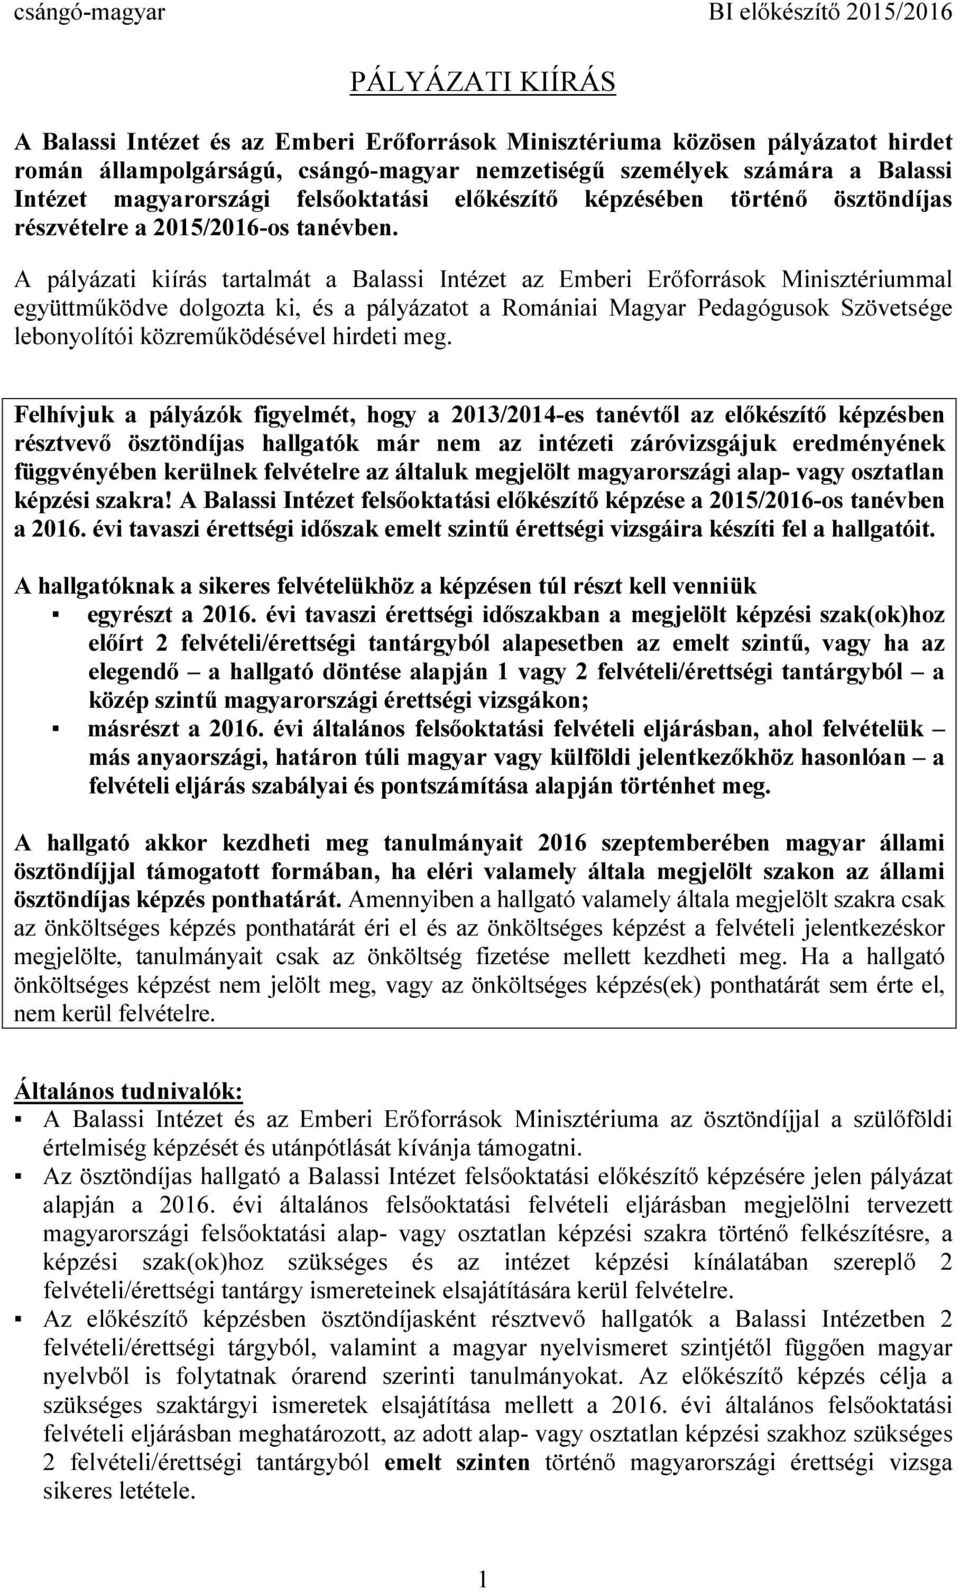 A pályázati kiírás tartalmát a Balassi Intézet az Emberi Erőforrások Minisztériummal együttműködve dolgozta ki, és a pályázatot a Romániai Magyar Pedagógusok Szövetsége lebonyolítói közreműködésével